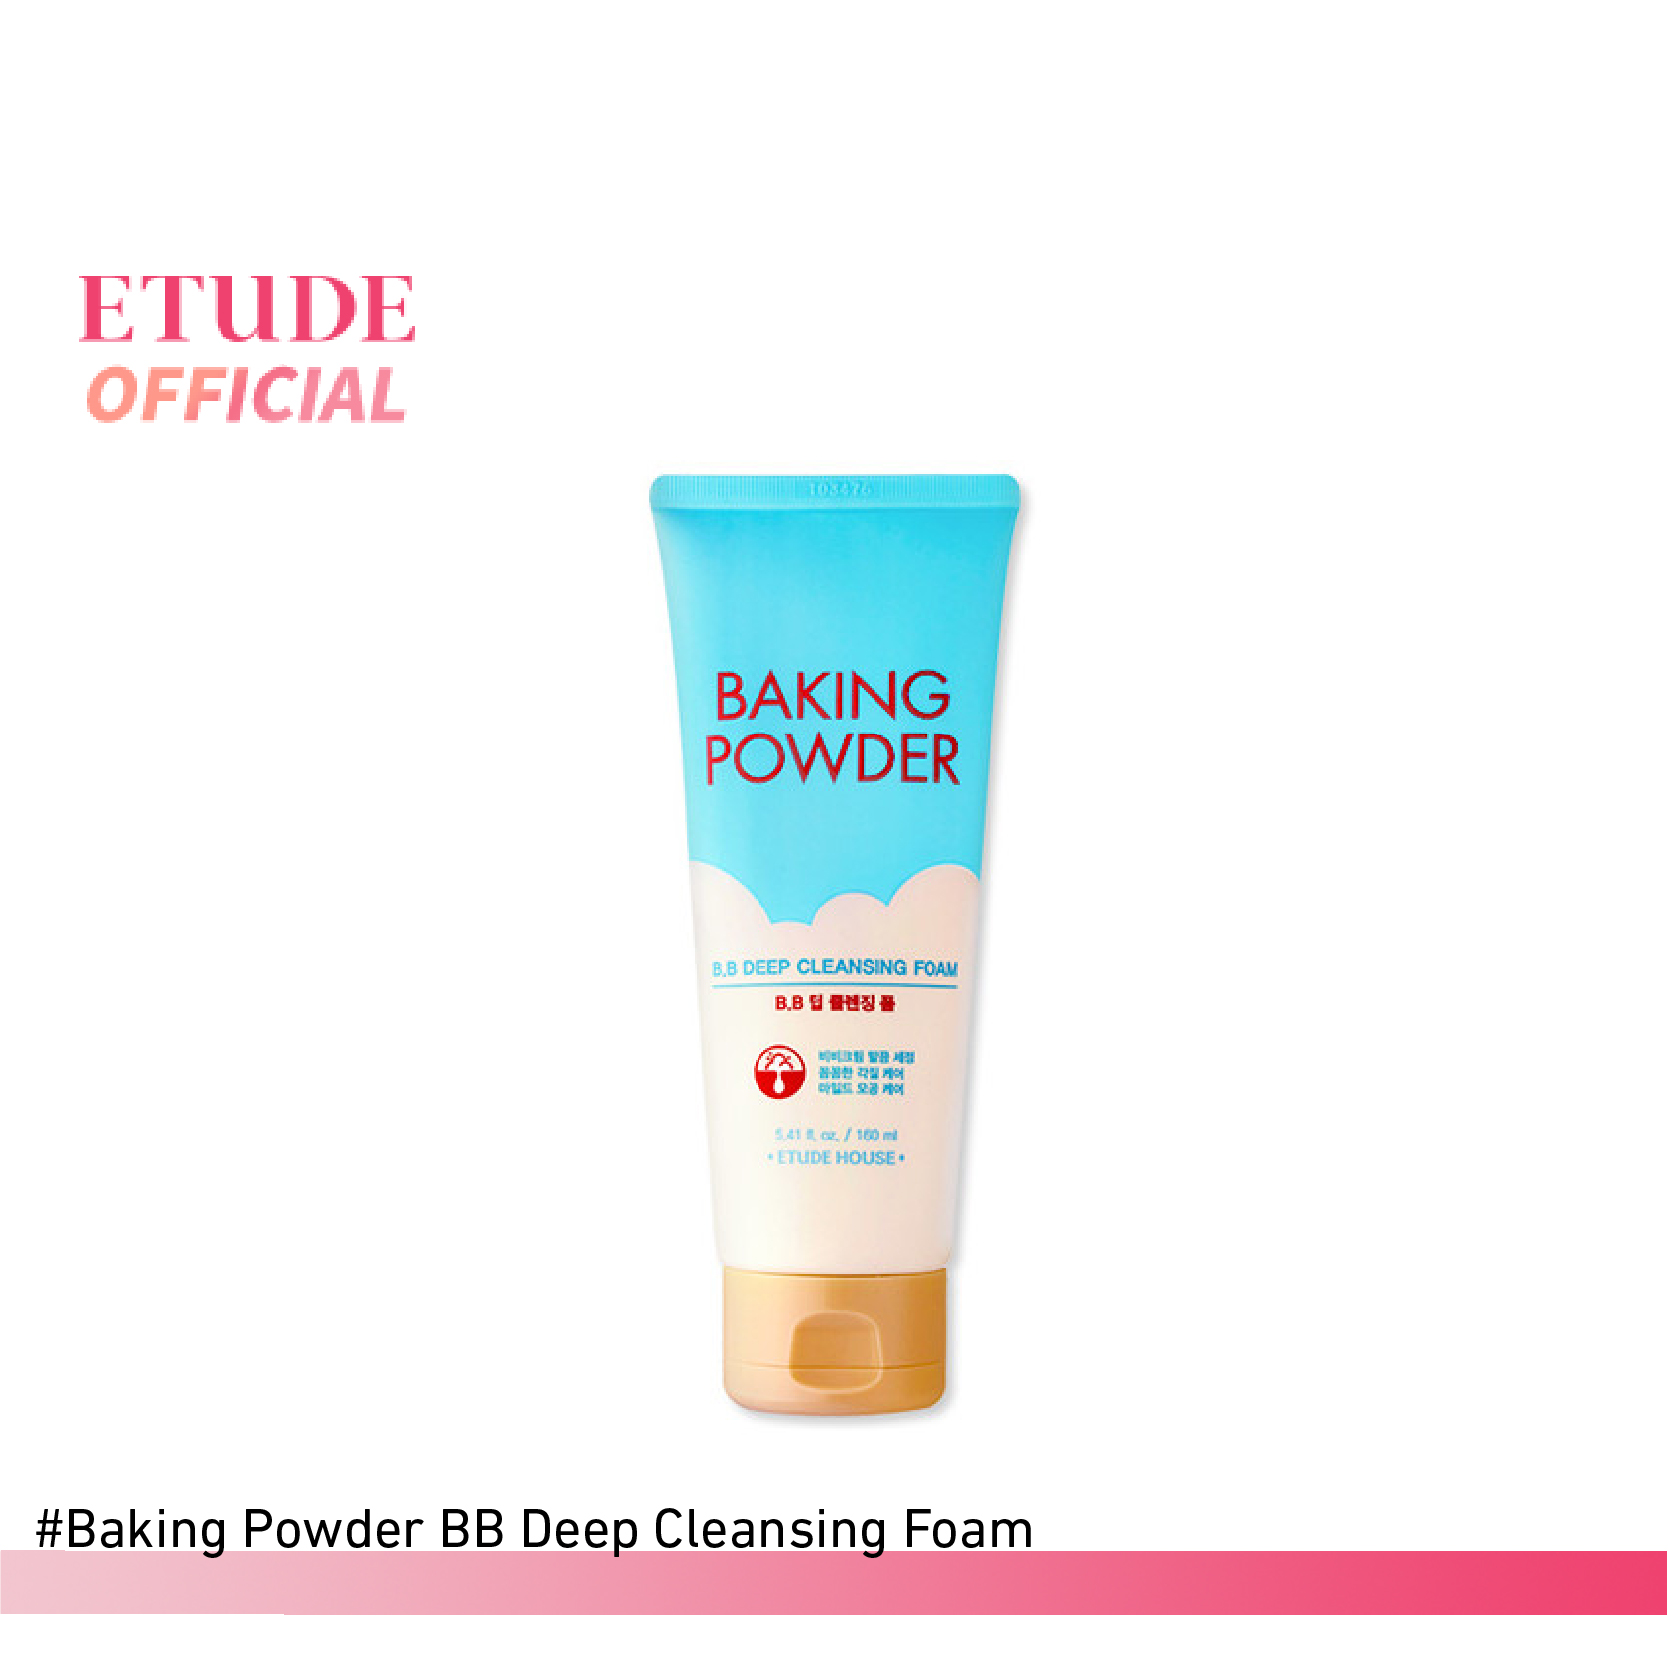 แนะนำ ETUDE Baking Powder B.B Deep Cleansing Foam (160 ml) อีทูดี้ โฟมล้างหน้า